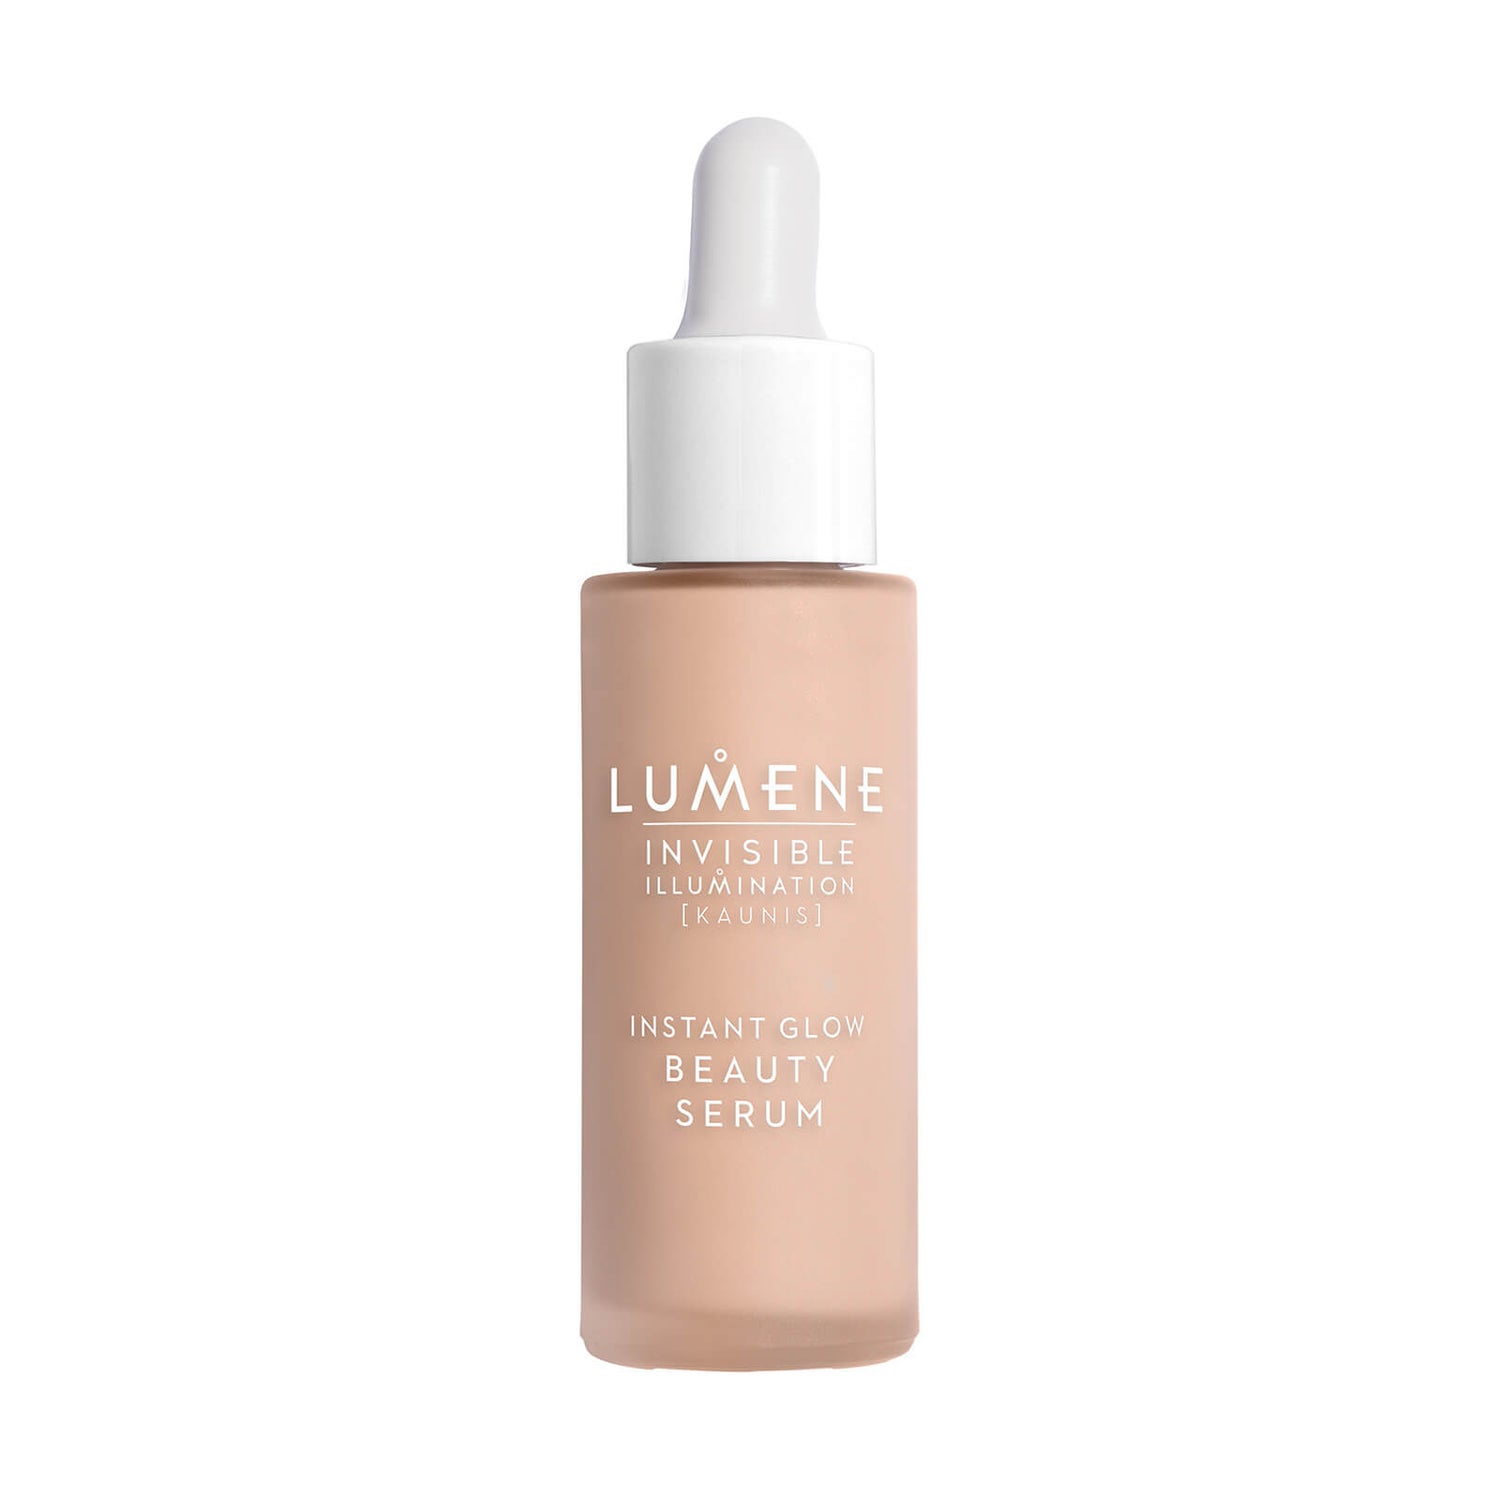 Lumene Invisible Illumination [KAUNIS] Beauty Serum - Medium 30ml